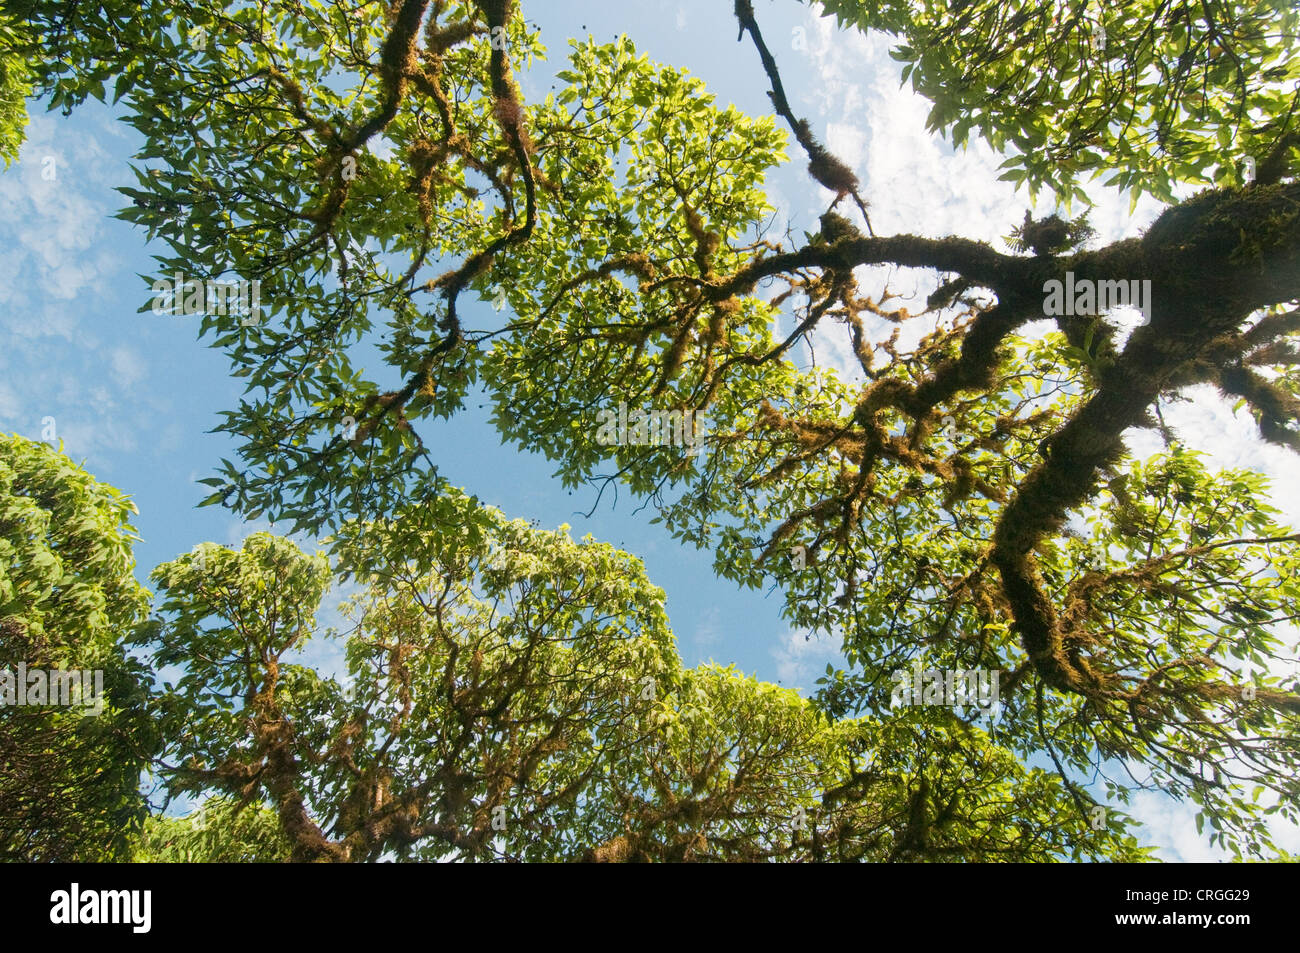 Scalesia forest, Santa Cruz, Galapagos Islands, Ecuador Stock Photo